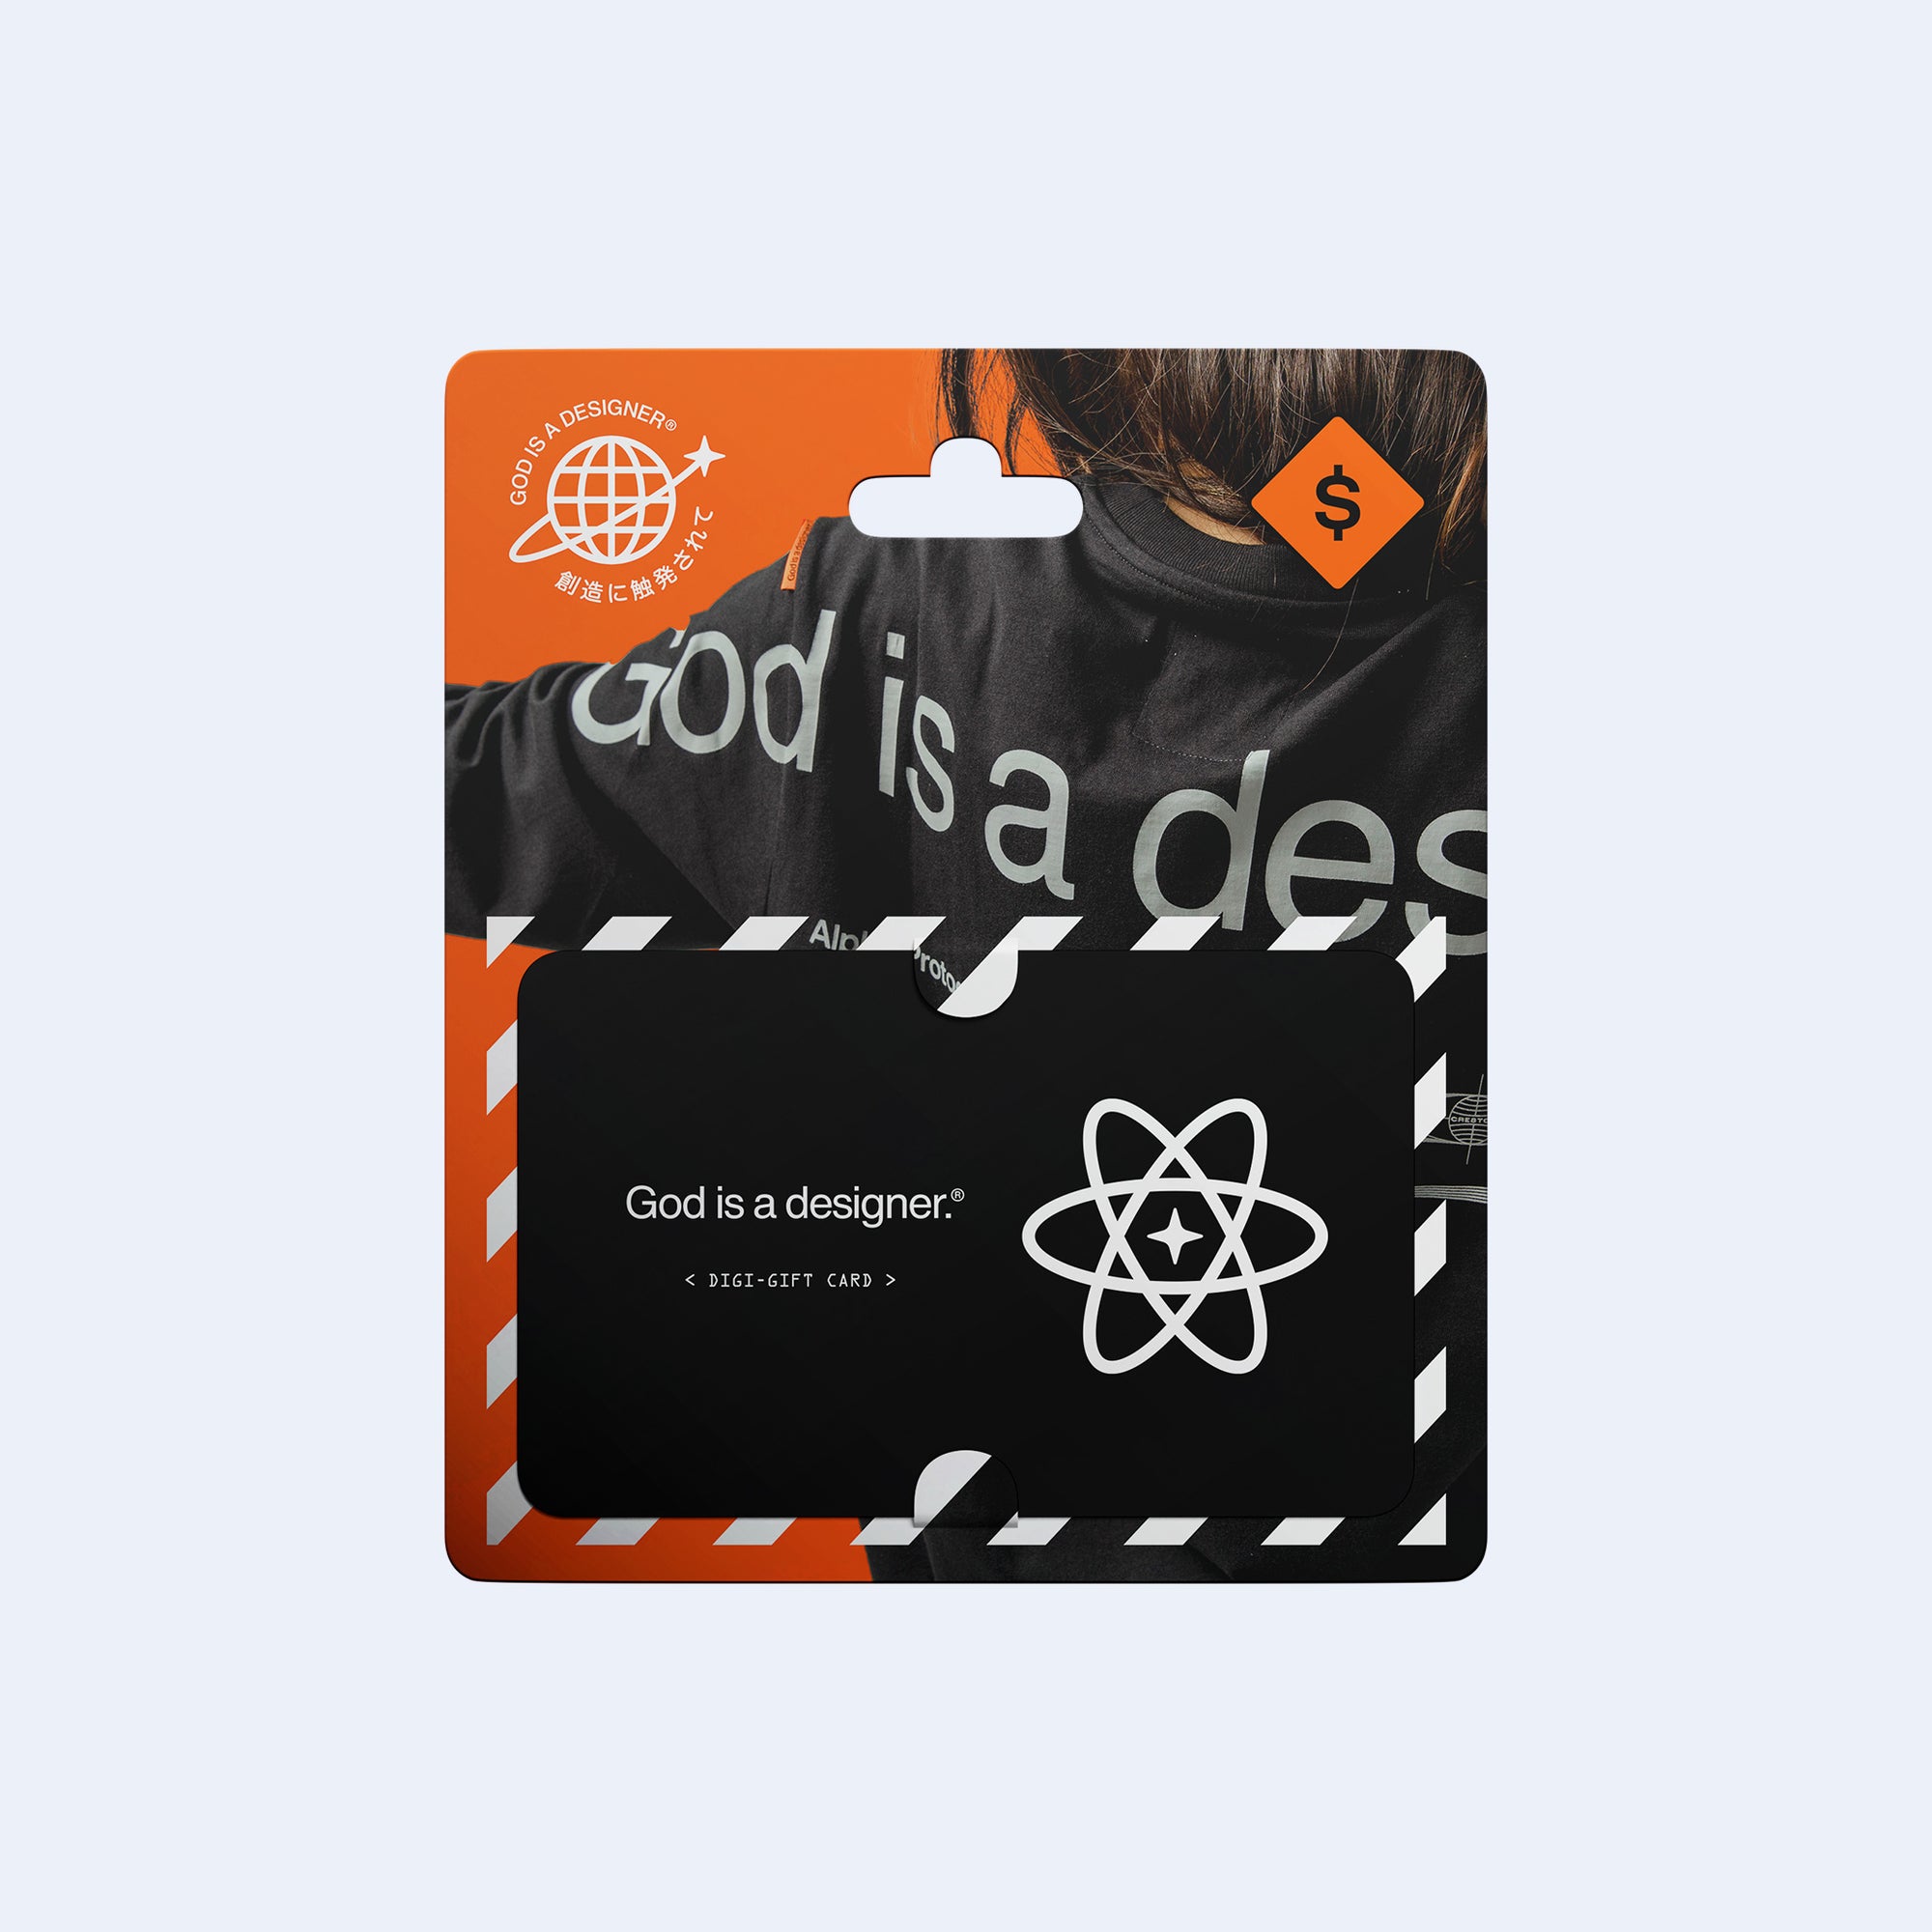 GIAD™ Digital Gift Card